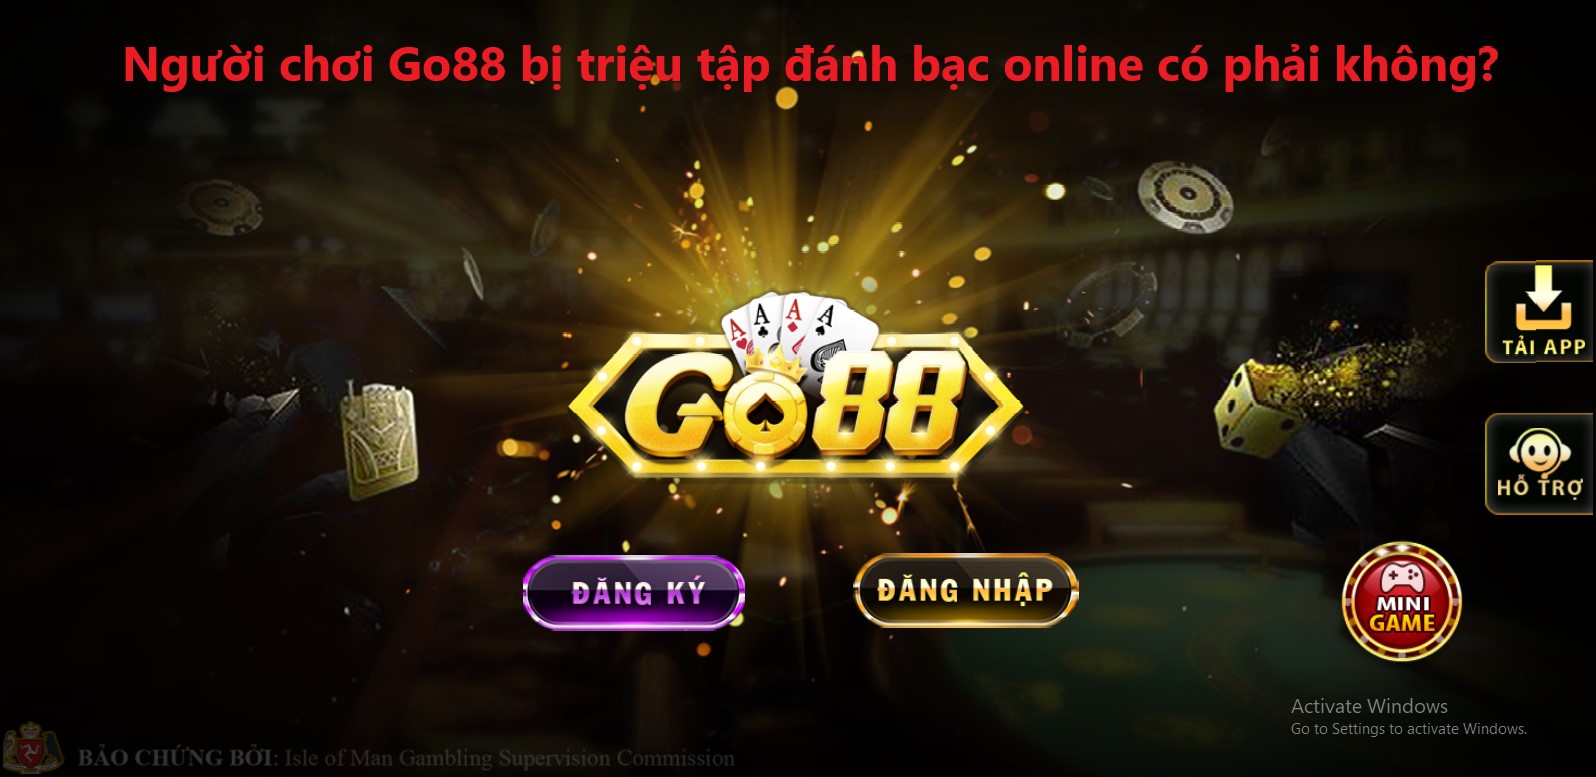 Người chơi Go88 bị triệu tập đánh bạc online có phải không?